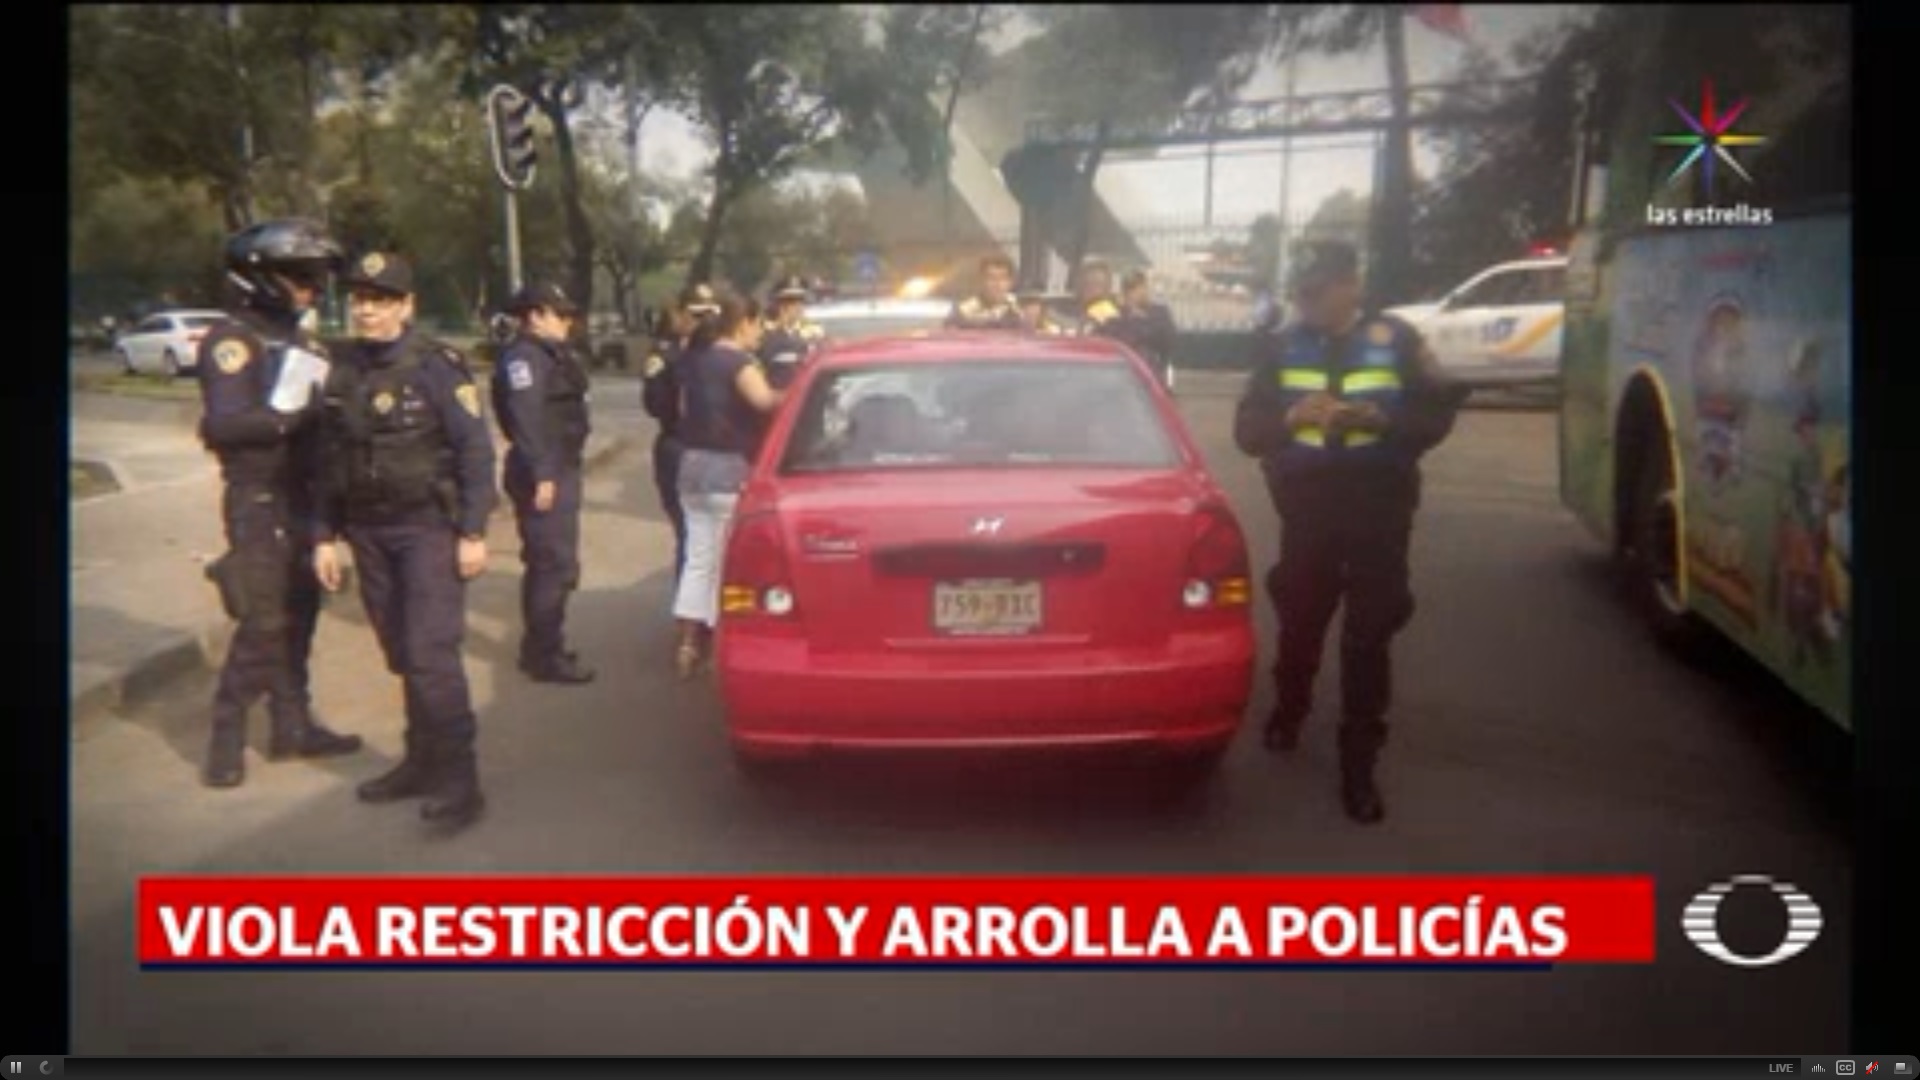 Atropellamiento, Reforma, Tránsito, multa, Hoy no Circula, policías